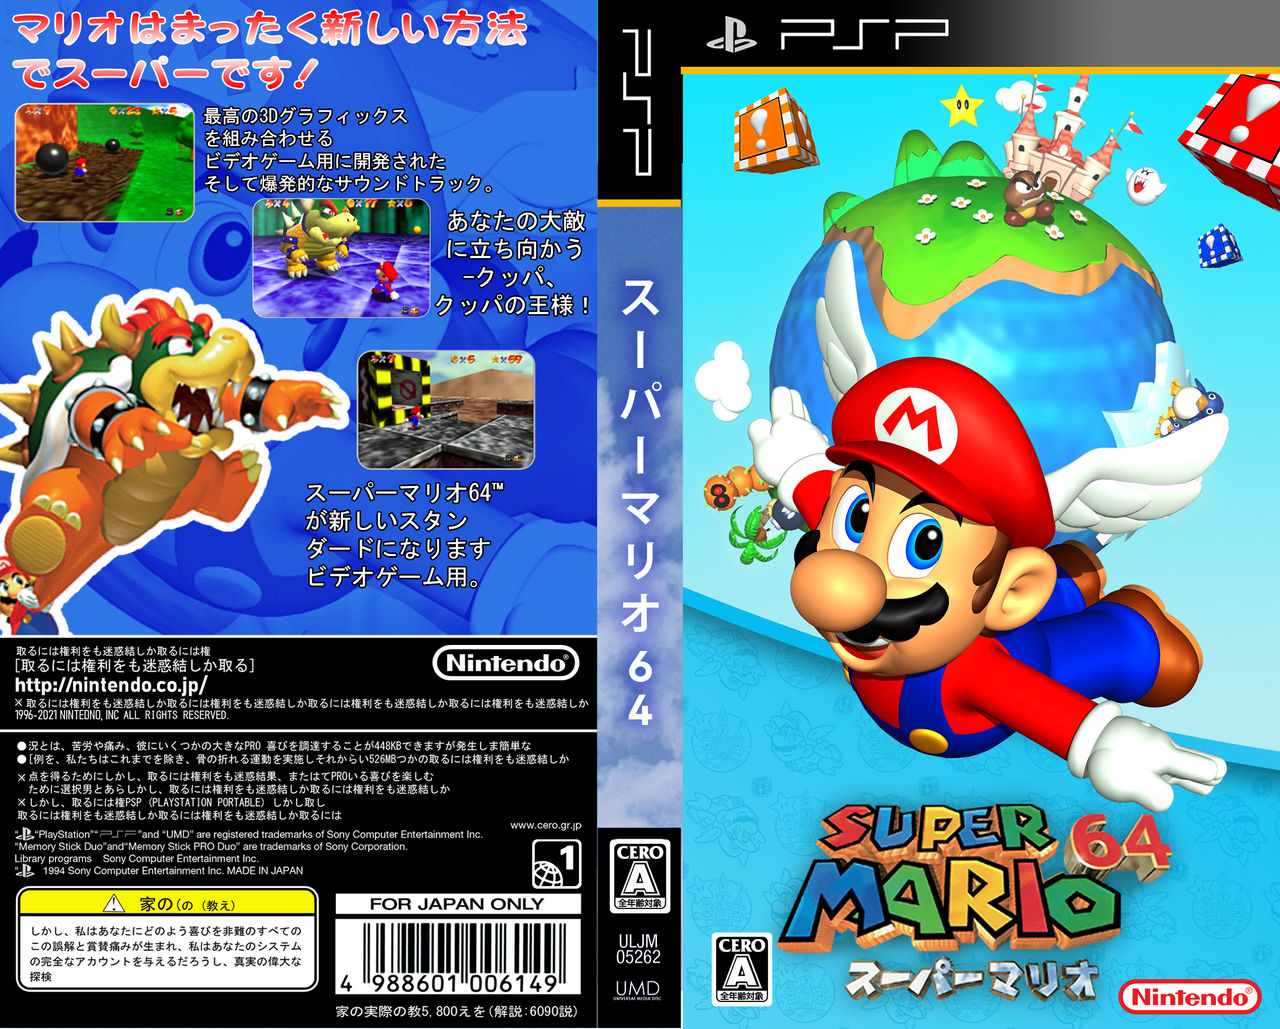 overdrive TRUE sammensmeltning Super Mario 64 PSP Box Art (JP) by Adzri64 on DeviantArt